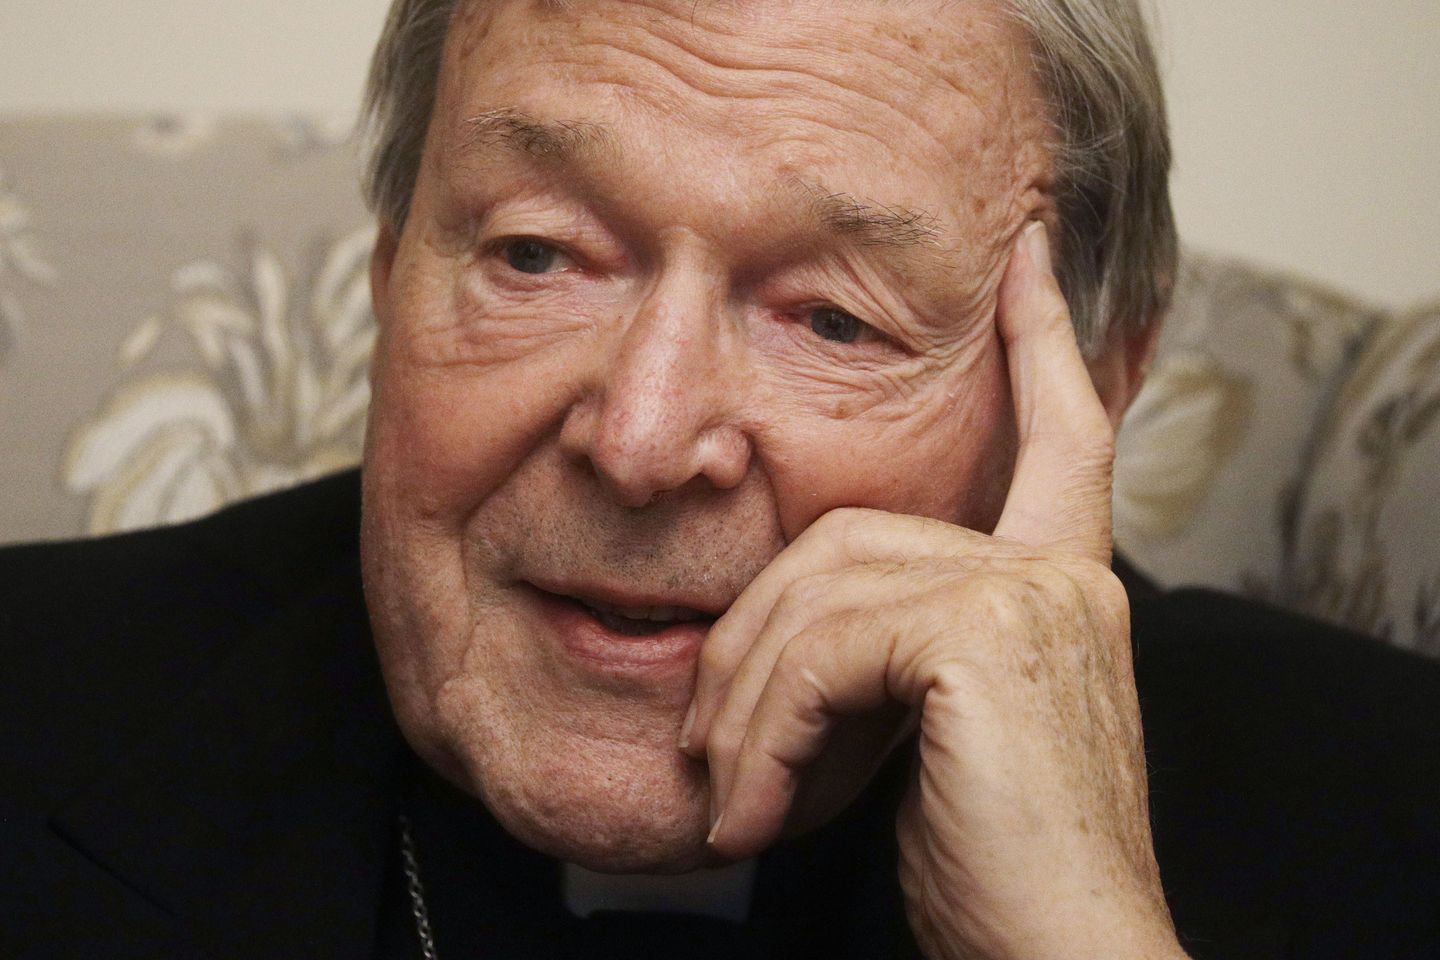 Kardinal George Pell, CFO Vatikan yang hukuman pelecehannya dibatalkan, meninggal pada usia 81 tahun